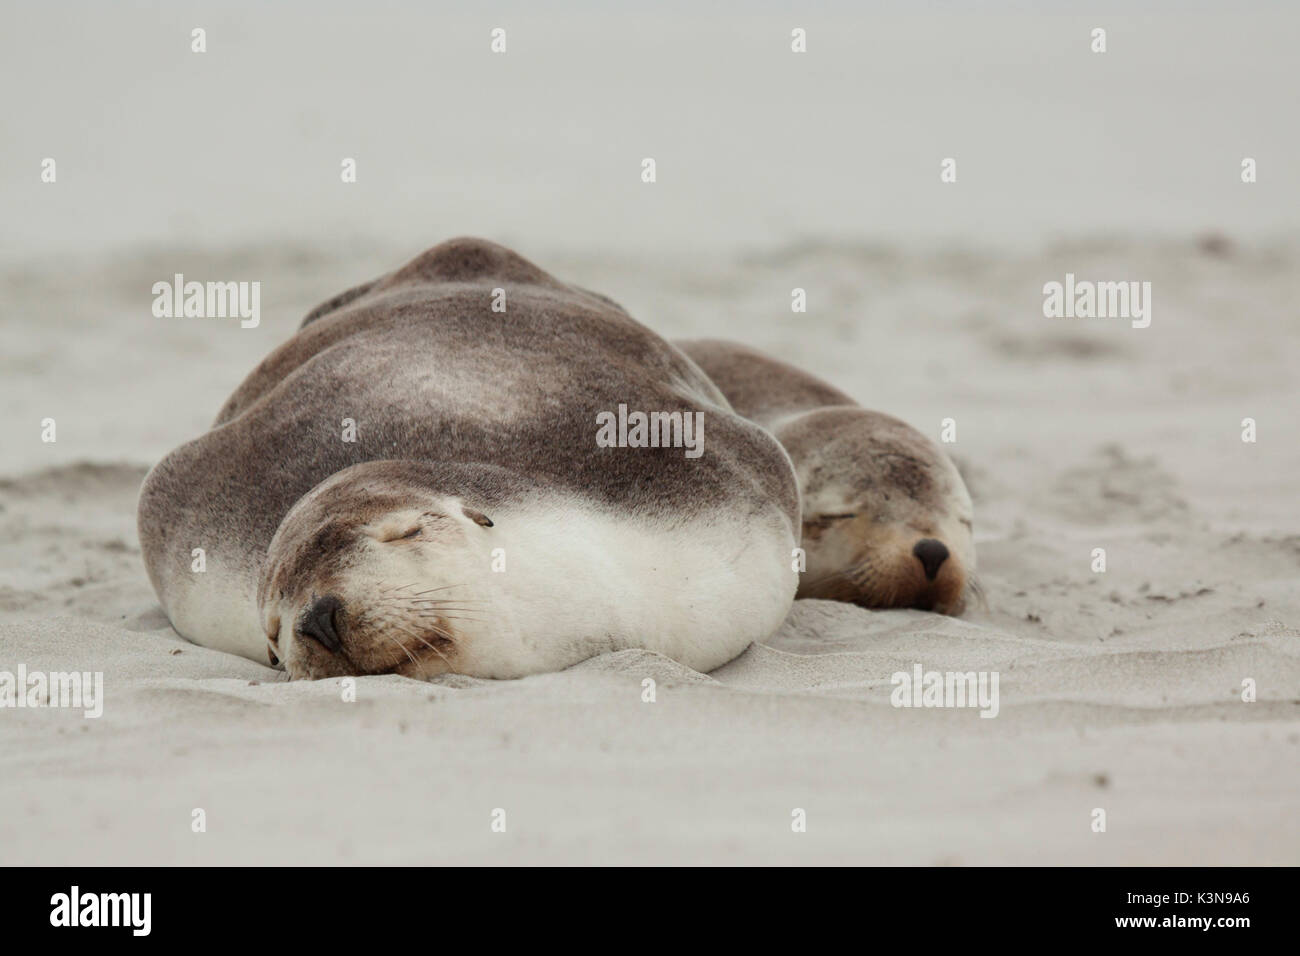 Sea Lions sleeping on Australian beach Stock Photo